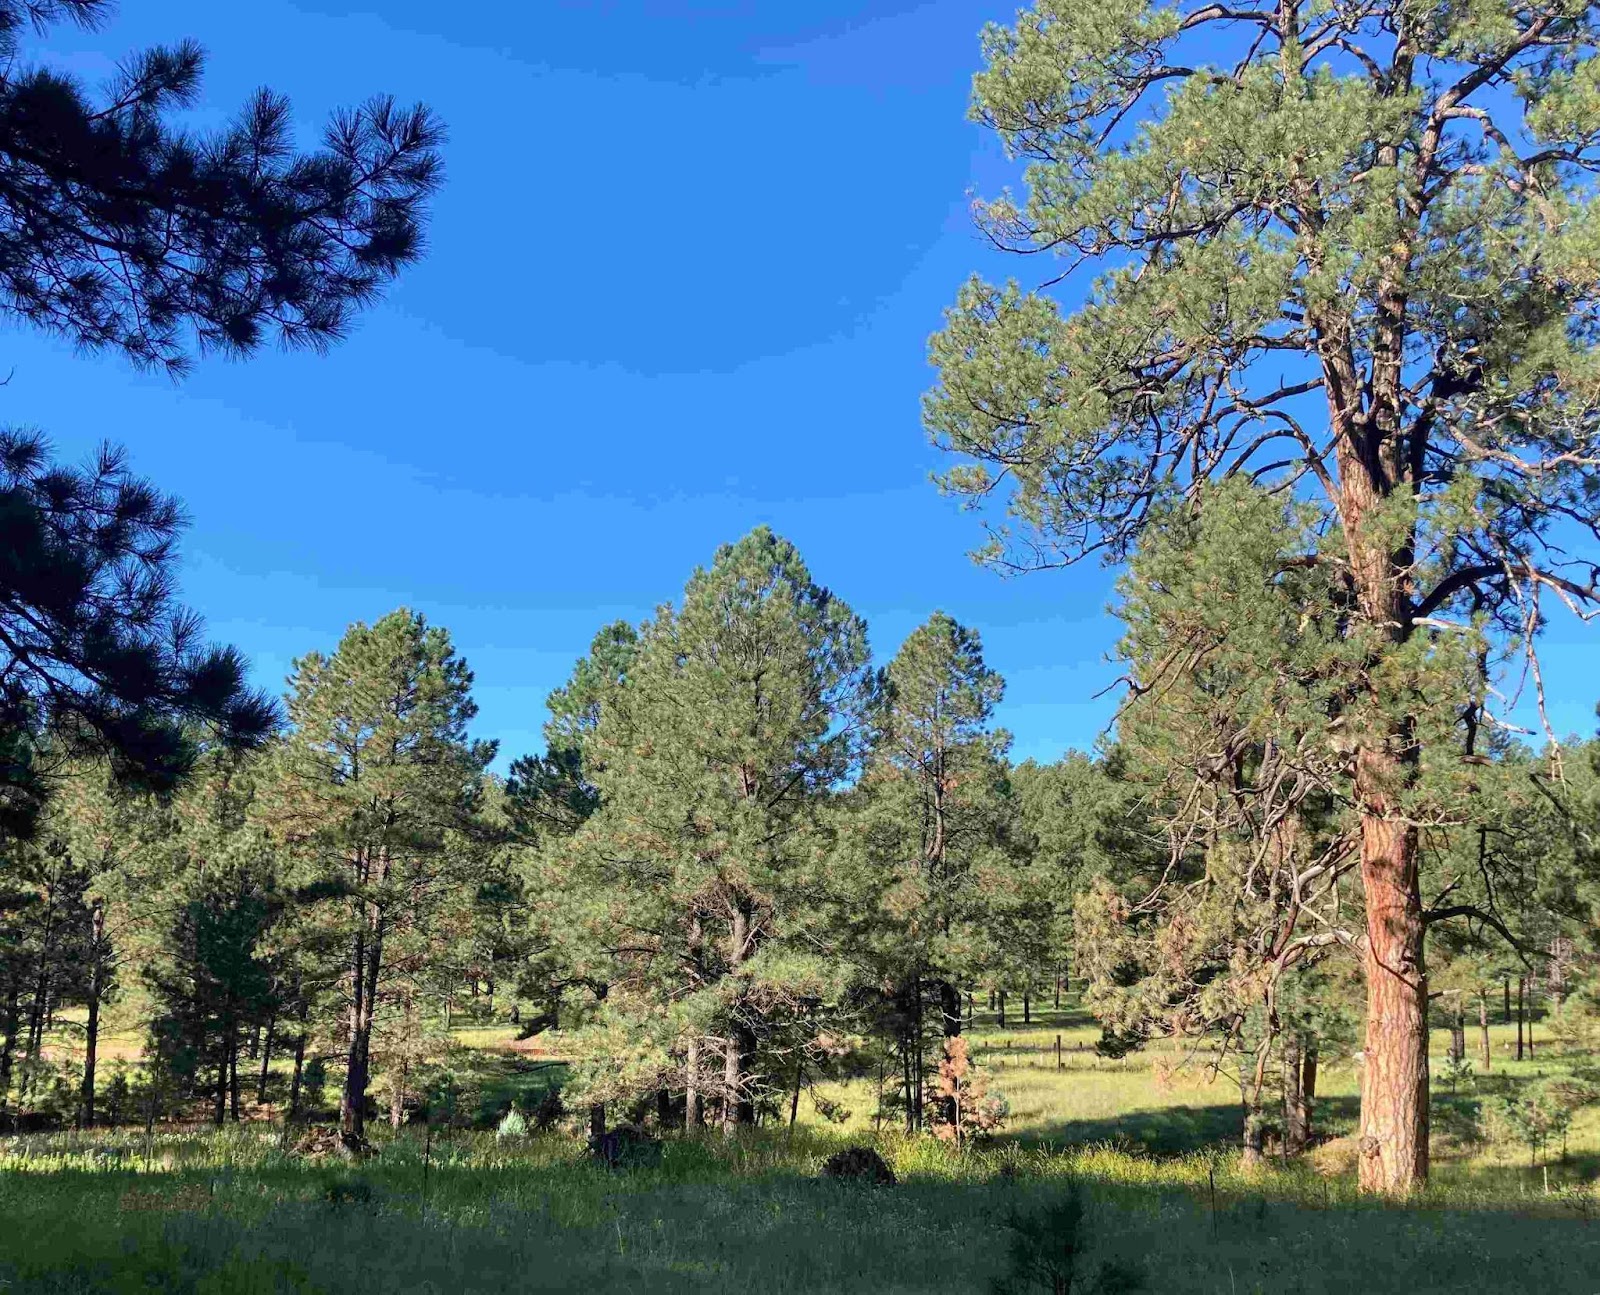 Una foto di un bosco erboso di pini che si estende in lontananza sotto uncielo brillantemente blu. L'intera scena è bella, verde e vibrante. I pinipiù grandi hanno una corteccia chiara e arancione, mentre quelli più piccolihanno una corteccia nera, caratteristica dei pini ponderosa, che cambianocolore amaturità.